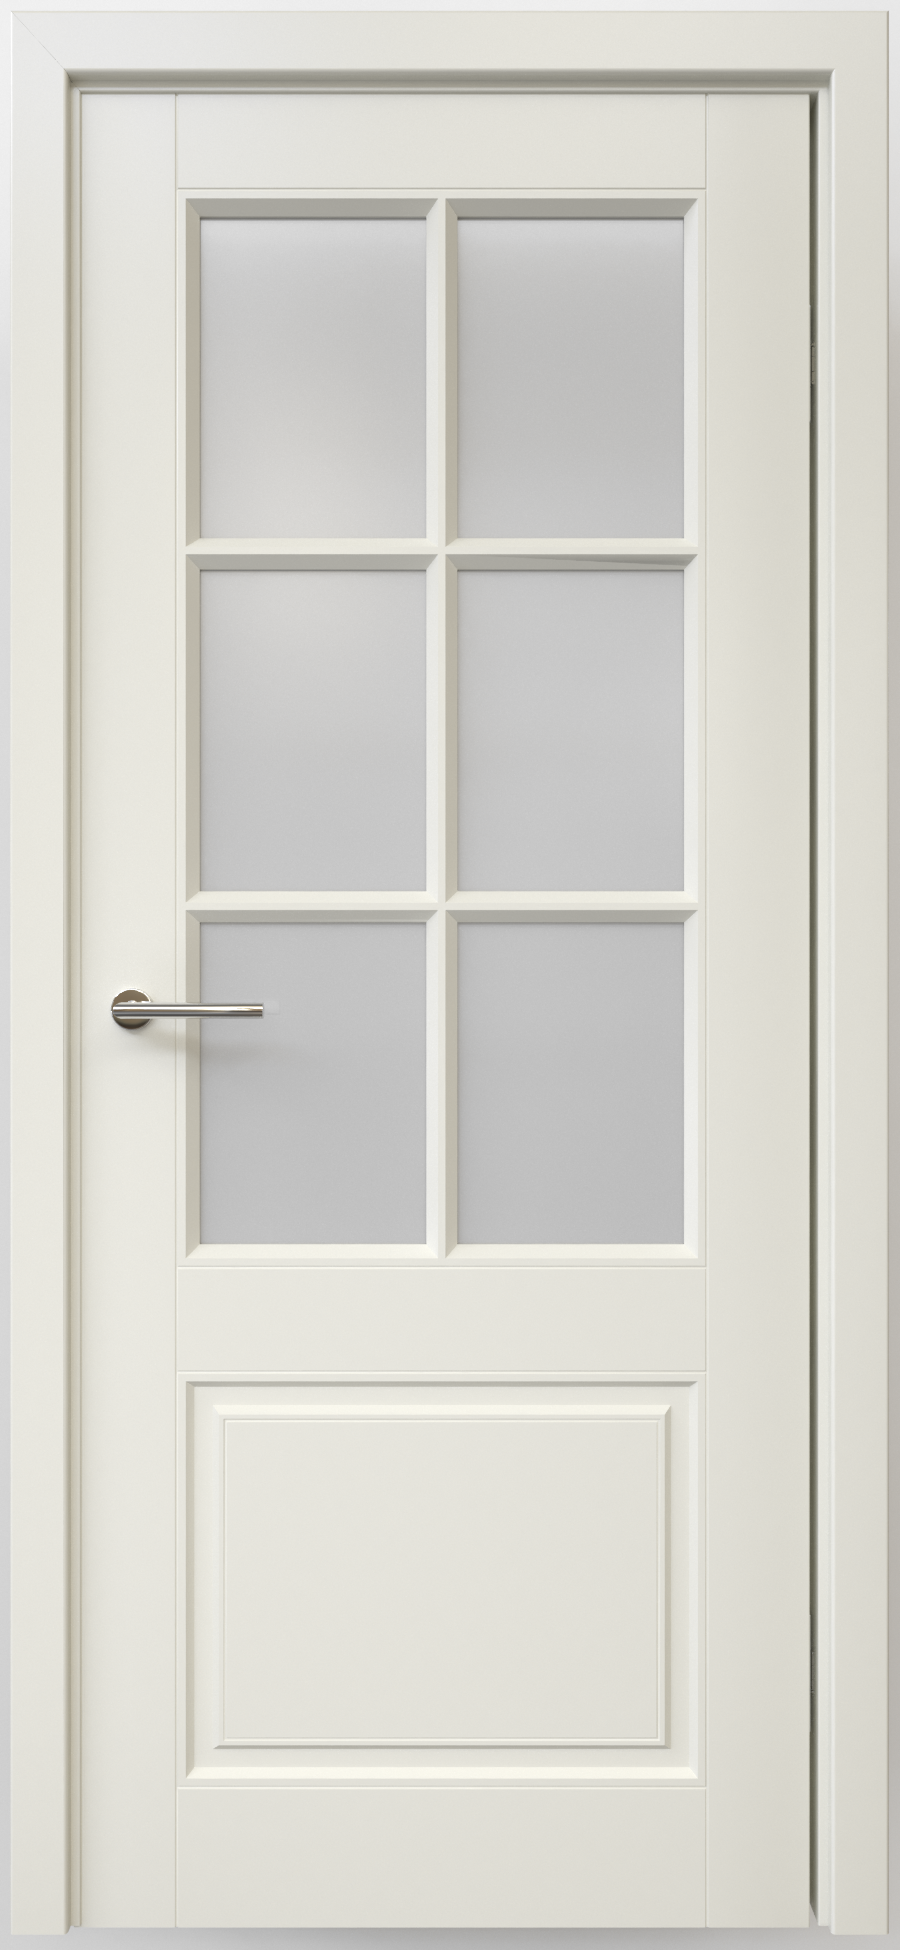 Полотно дверное остекленное Эмаль Классика-4 ПРАВОЕ 800 латте стекло мателюкс (защелка маг.)